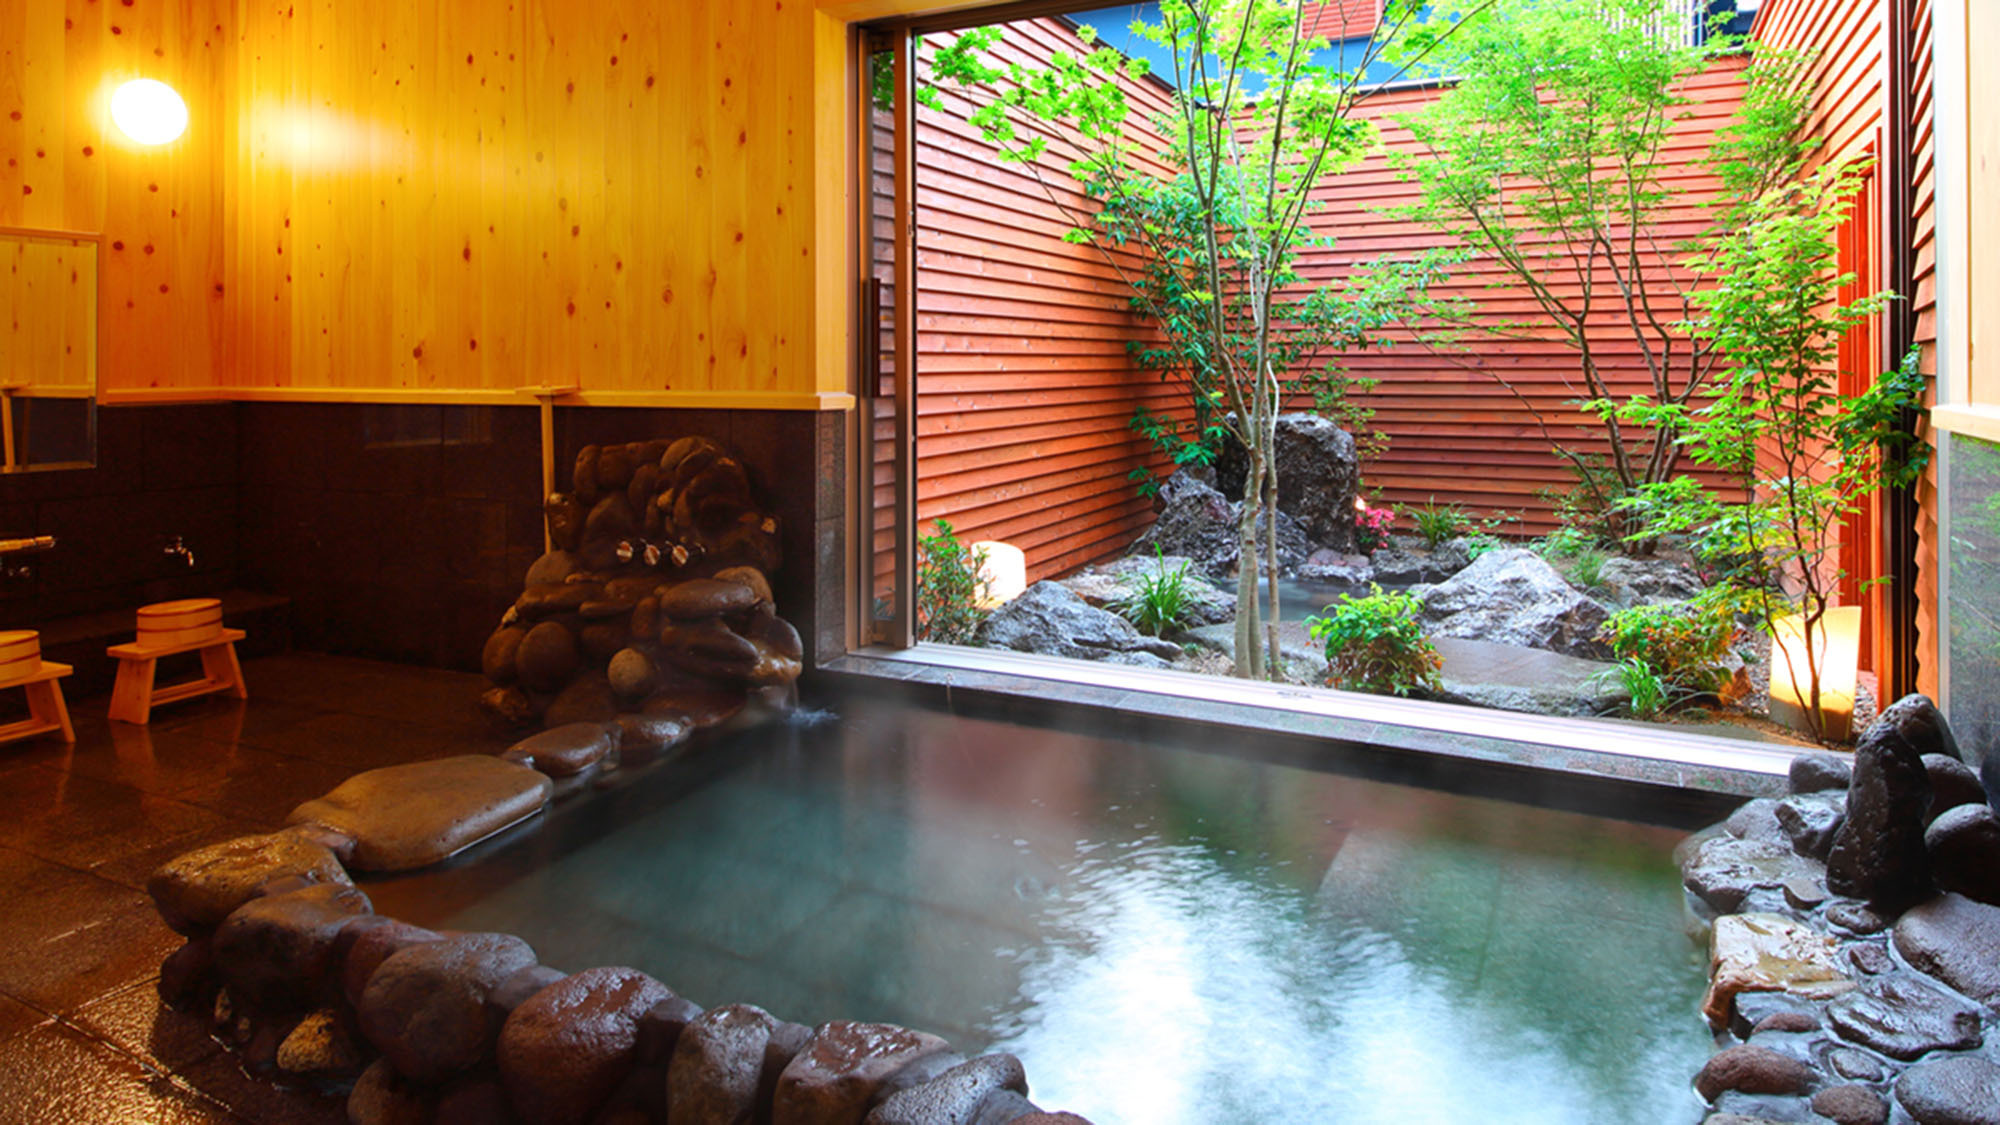 ・【匠(しょう)】檜壁、檜天井の心地よい香り溢れる内湯には個性豊かな石々で組まれた趣き深い岩風呂